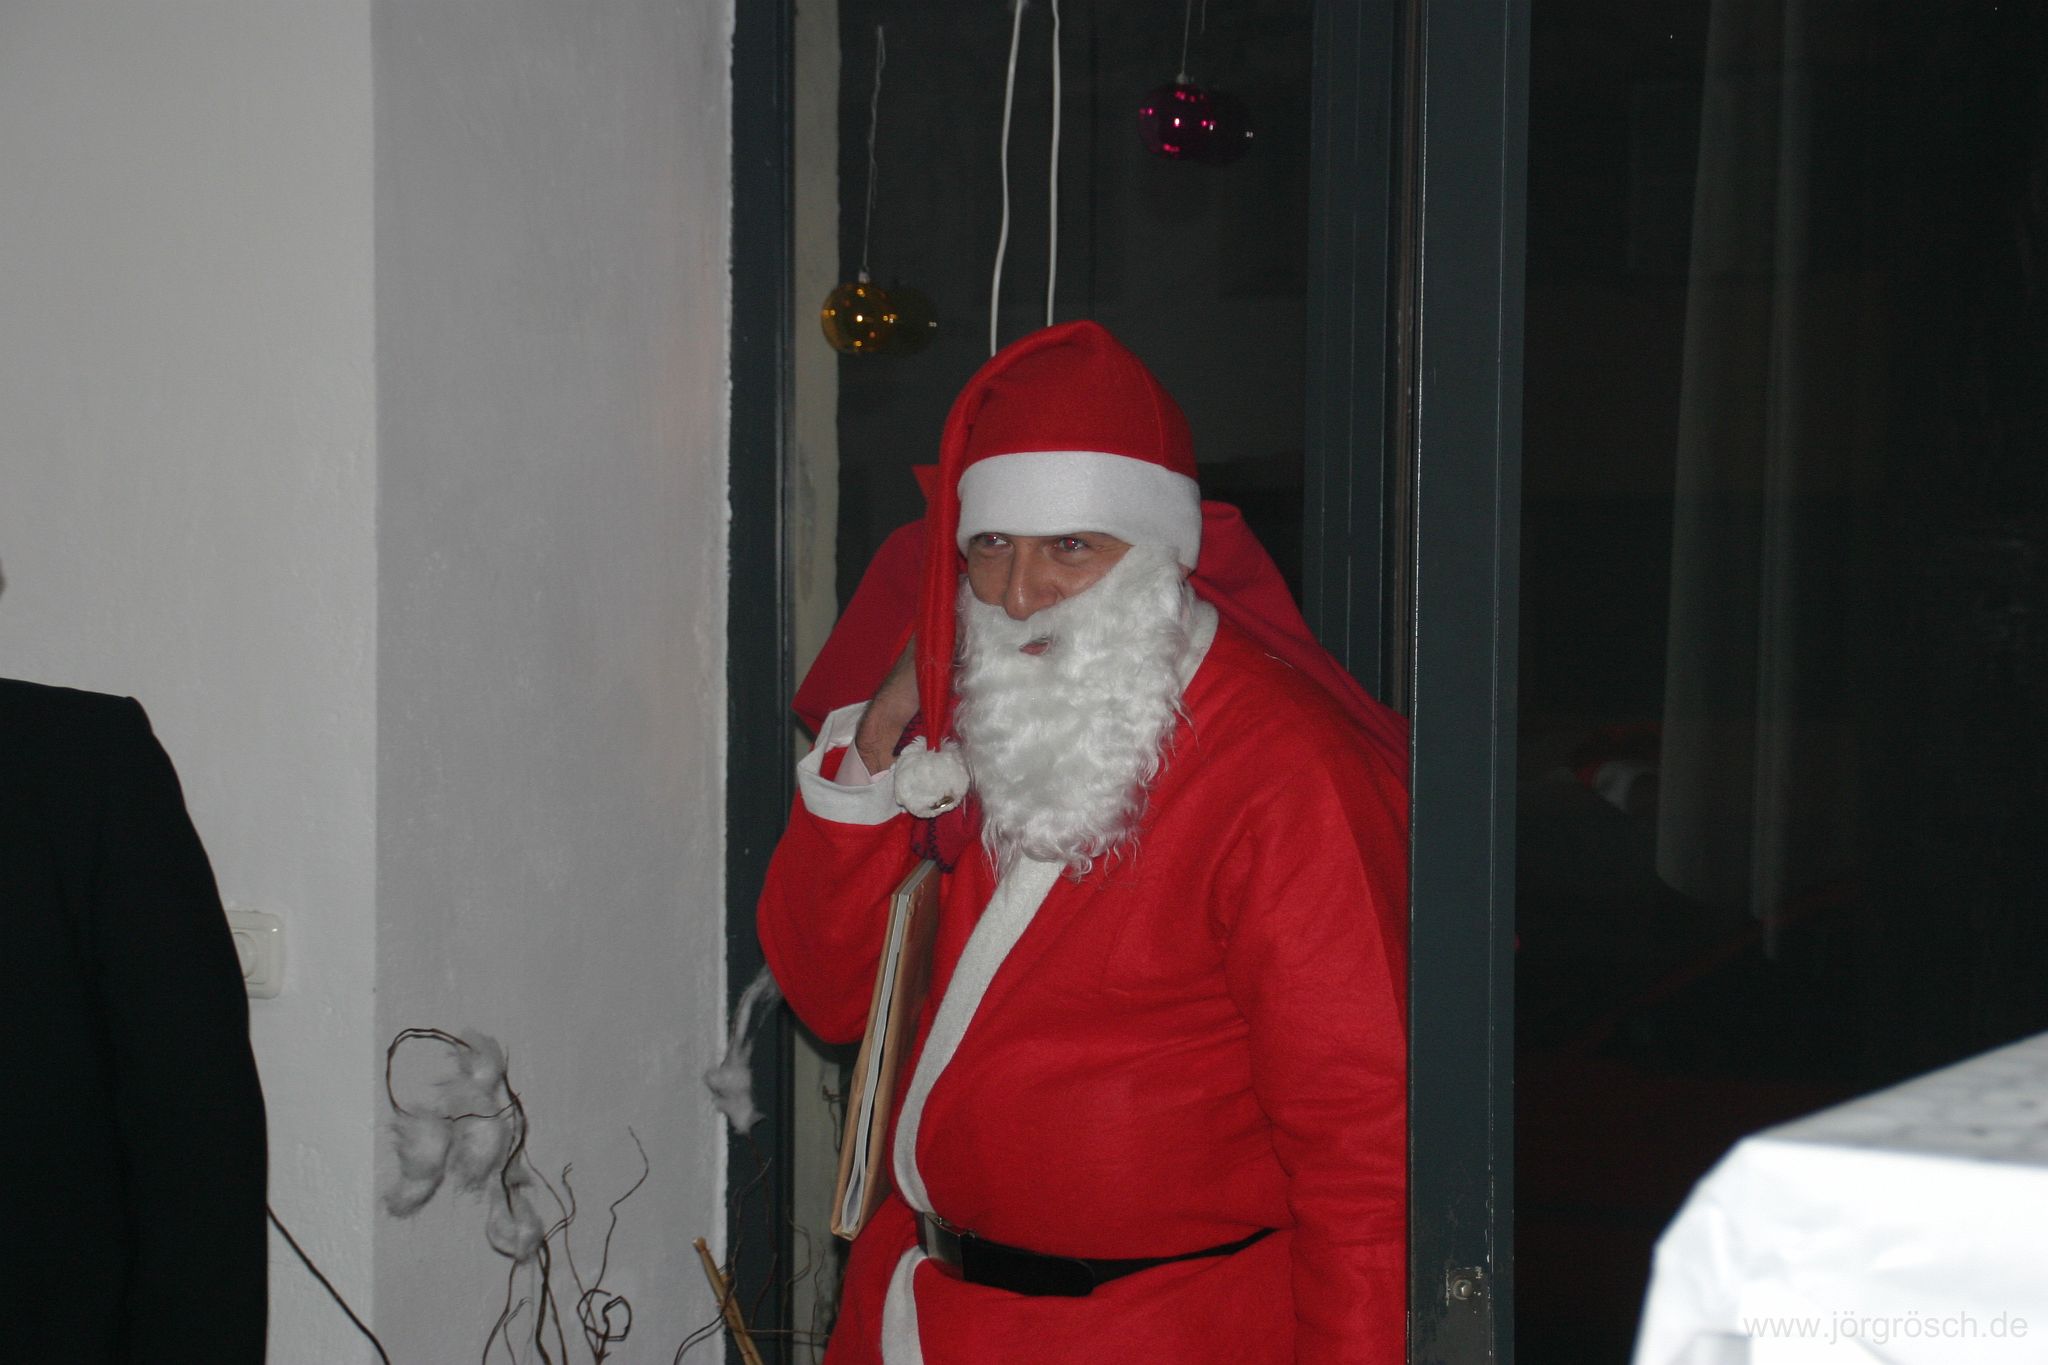 200512 nikolaus.jpg - Weihnachtsfeier in München mit Bewichtelung